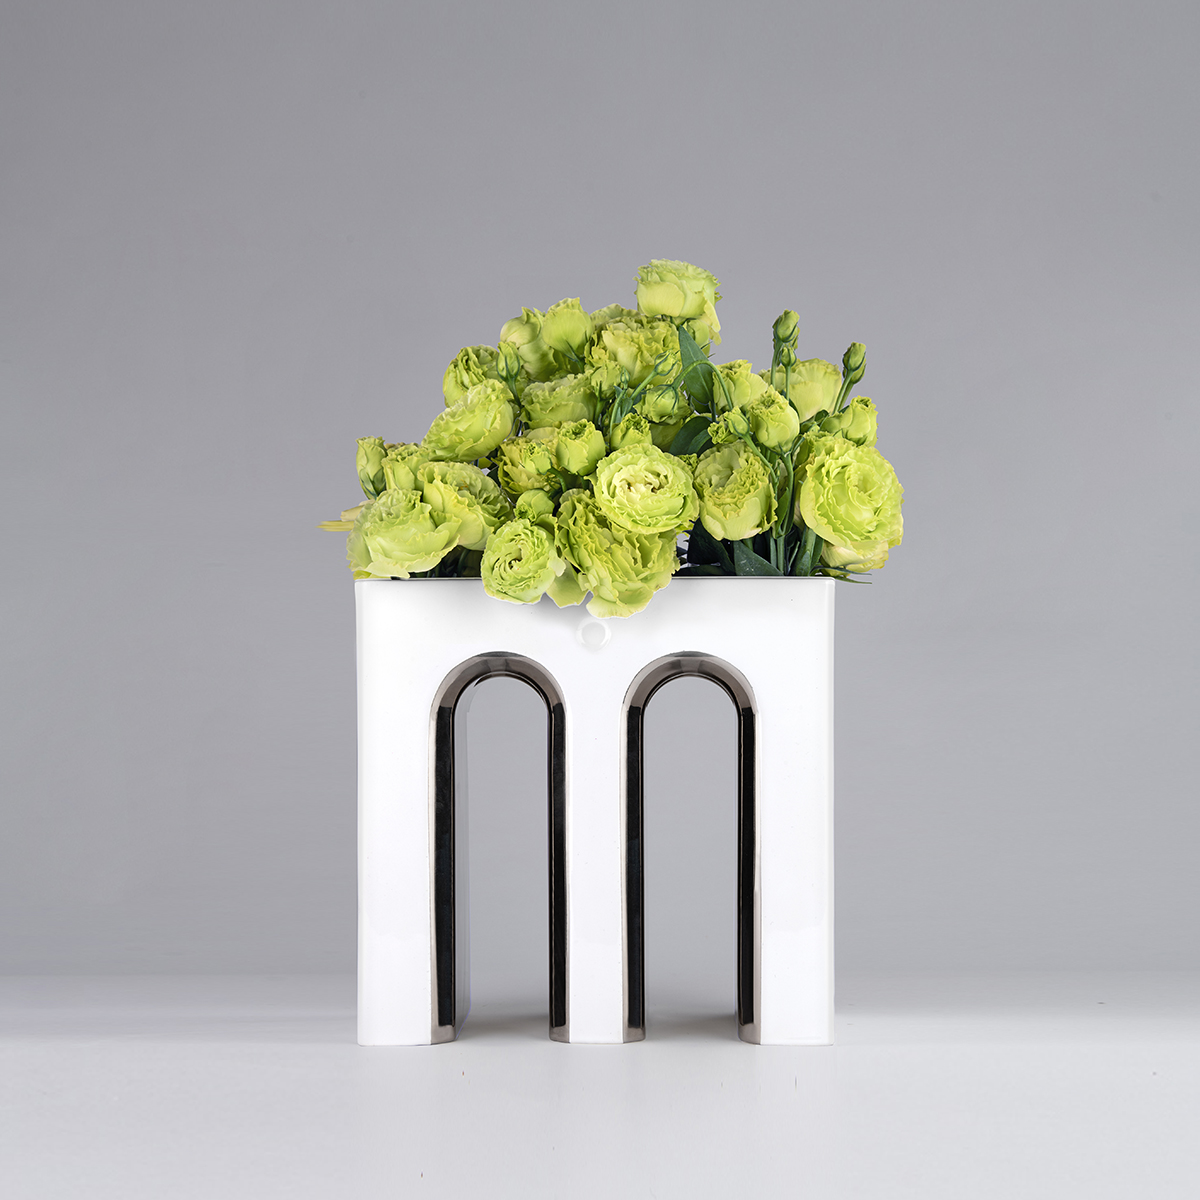 Massimo - Flower vase